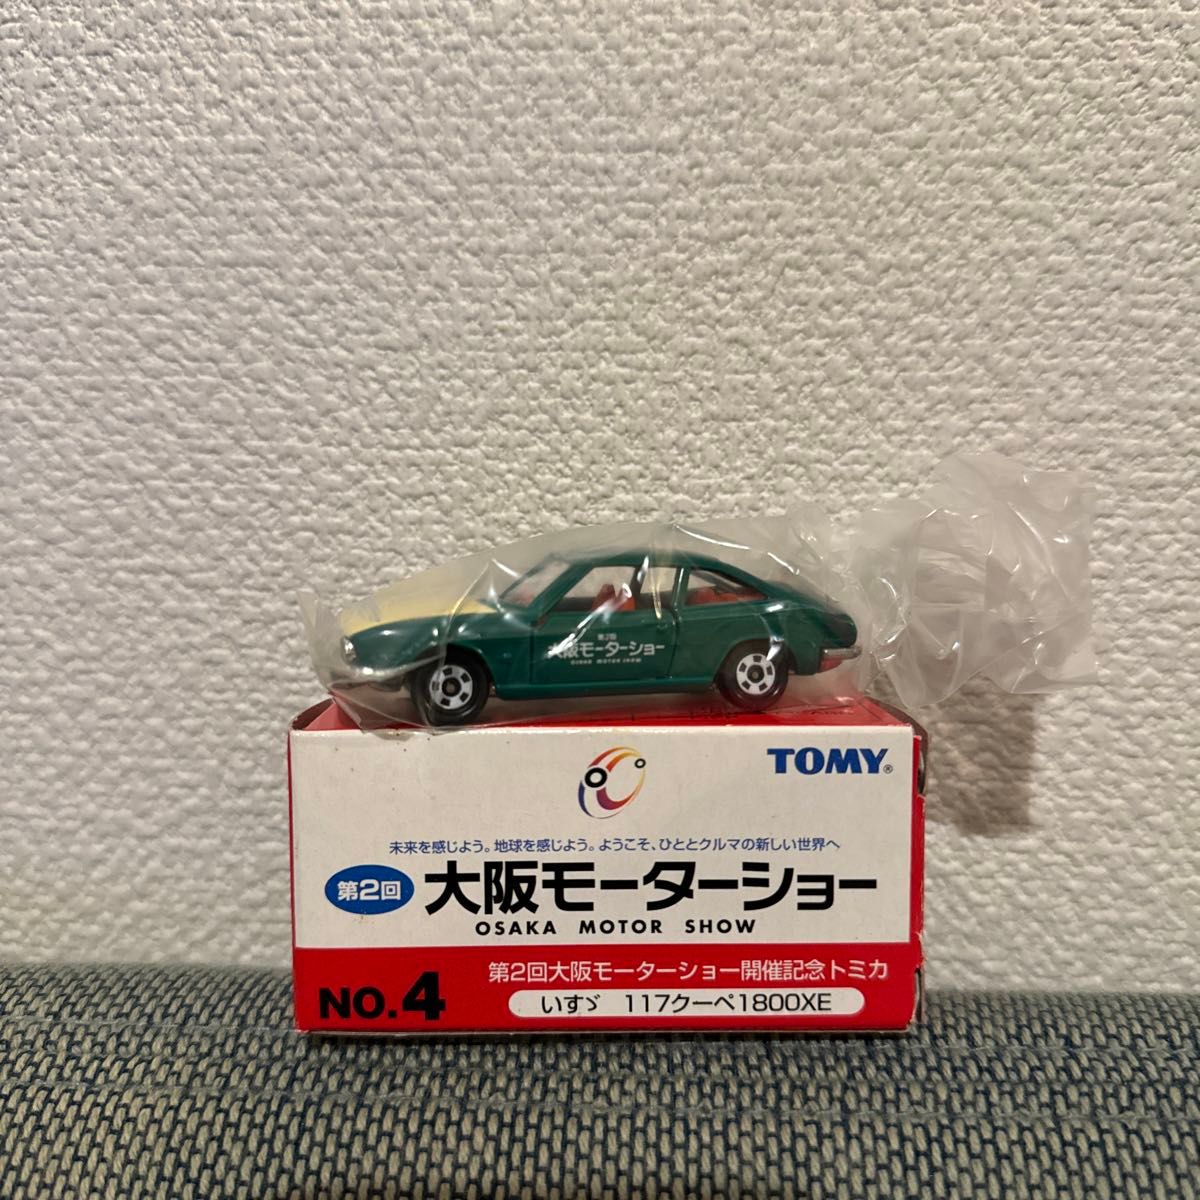 【TOMICA】[第2回大阪モーターショー開催記念]トミカNo.4_いすゞ 117クーペ1800XE